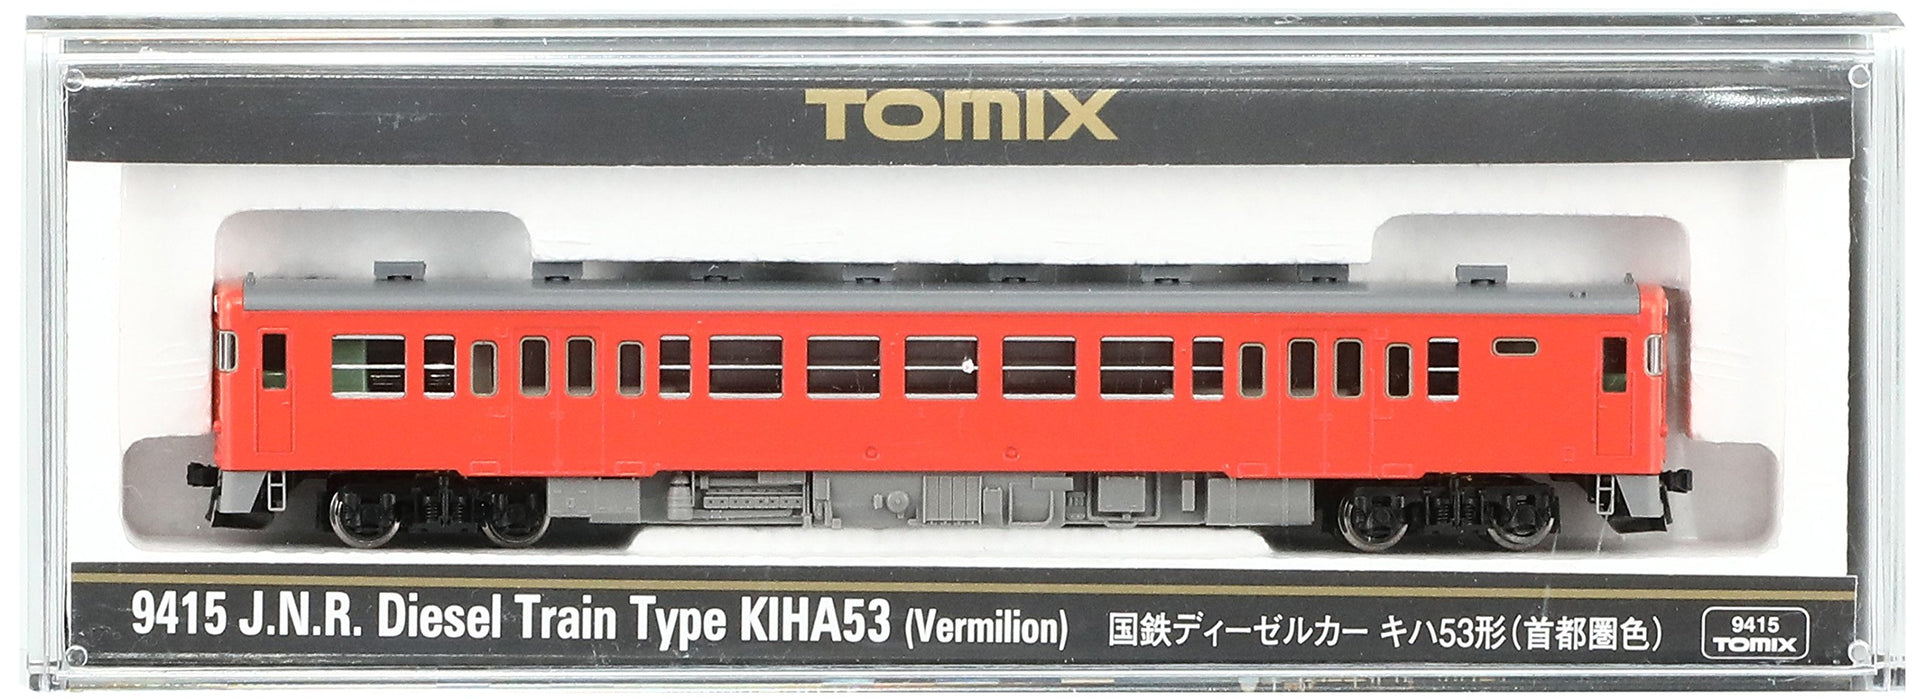 Tomytec Tomix N Spurweite Kiha53 Dieselwagen – Eisenbahnmodell in Metropolregionsfarbe